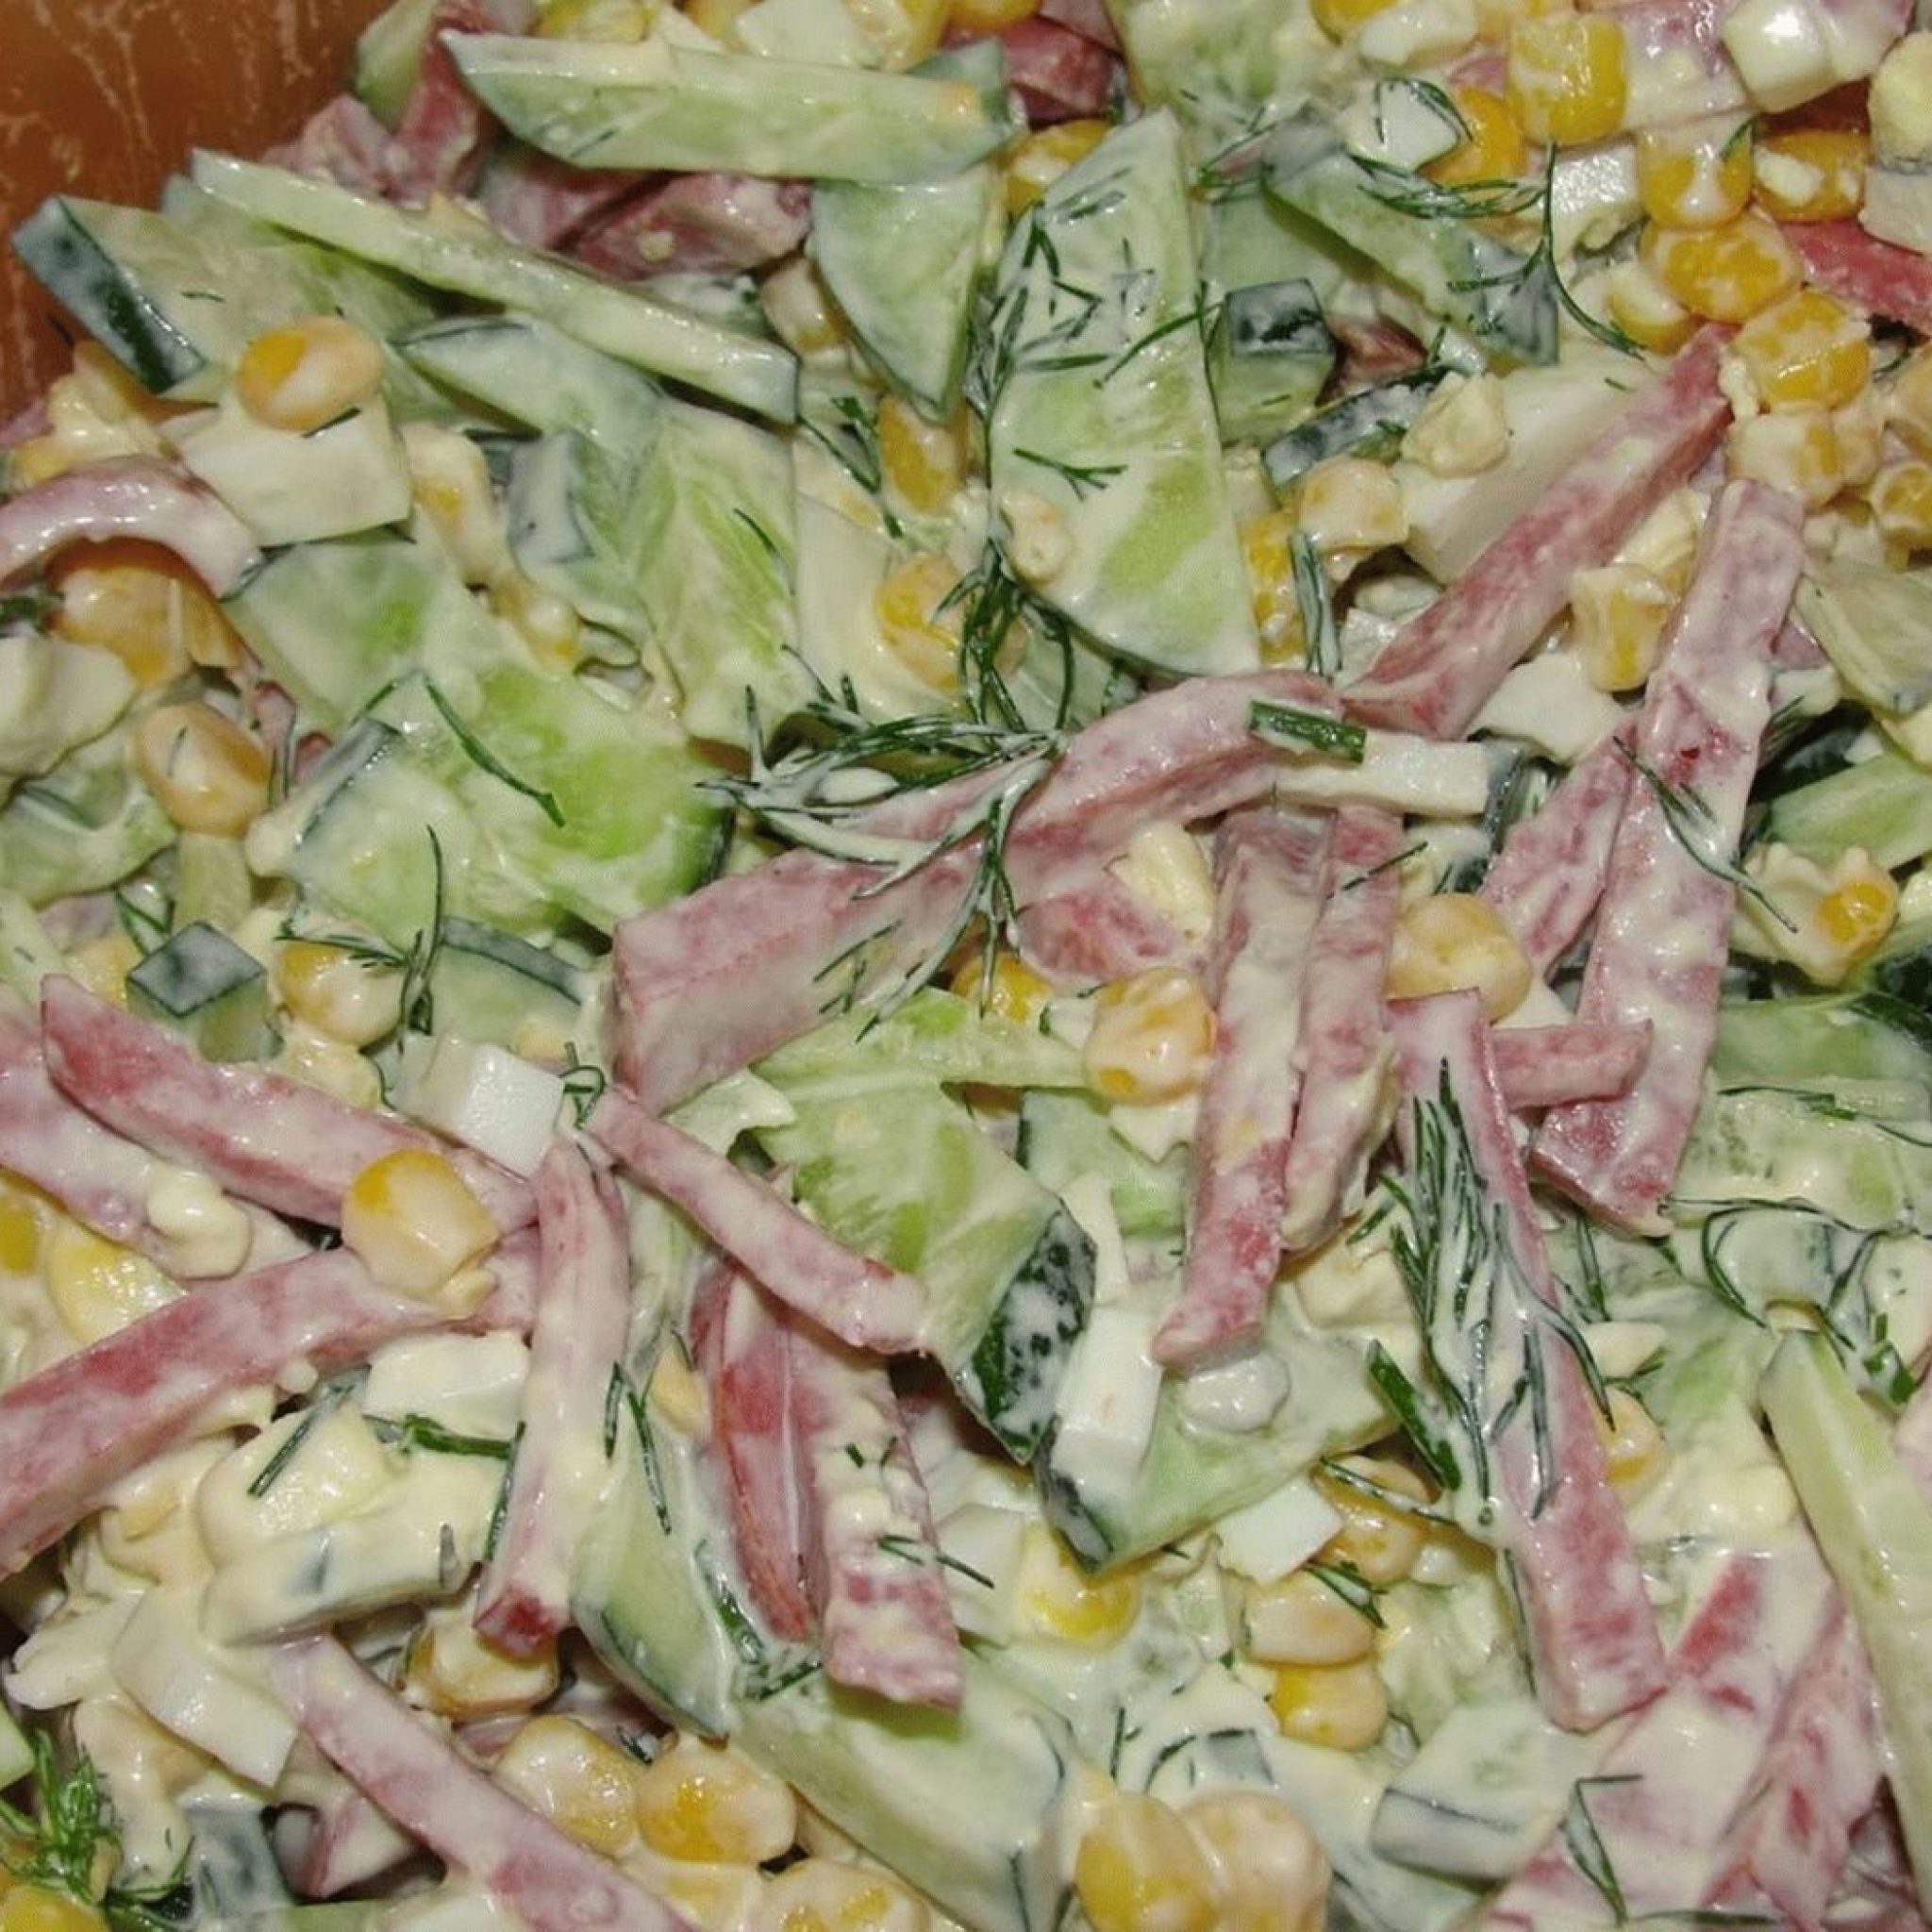 Вкусный салат с копченой колбасой